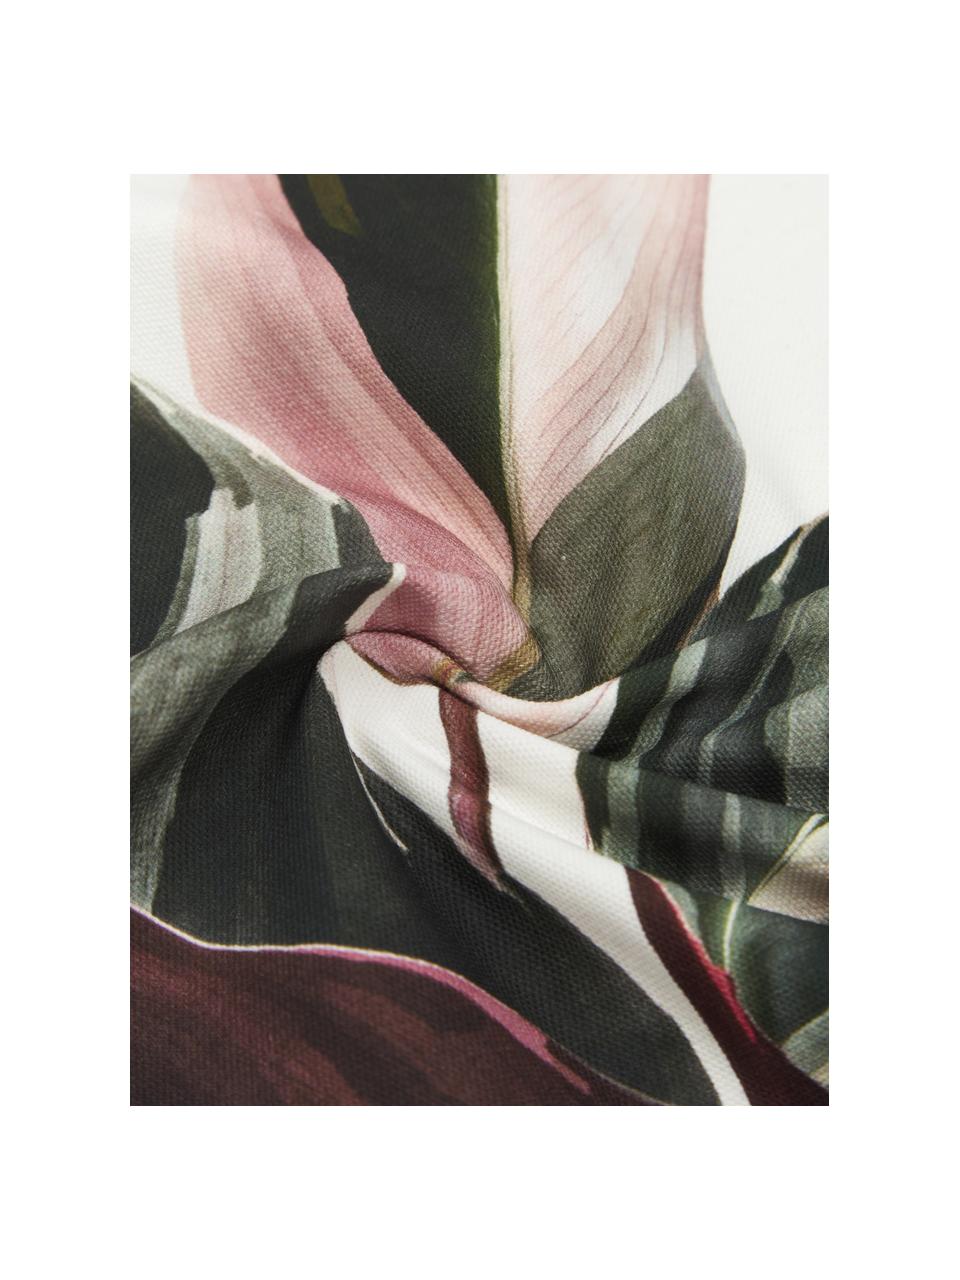 Katoenen kussenhoes Triostar met bloemenmotief, 100% katoen, Donkergroen, roze, crèmewit, B 50 x L 50 cm